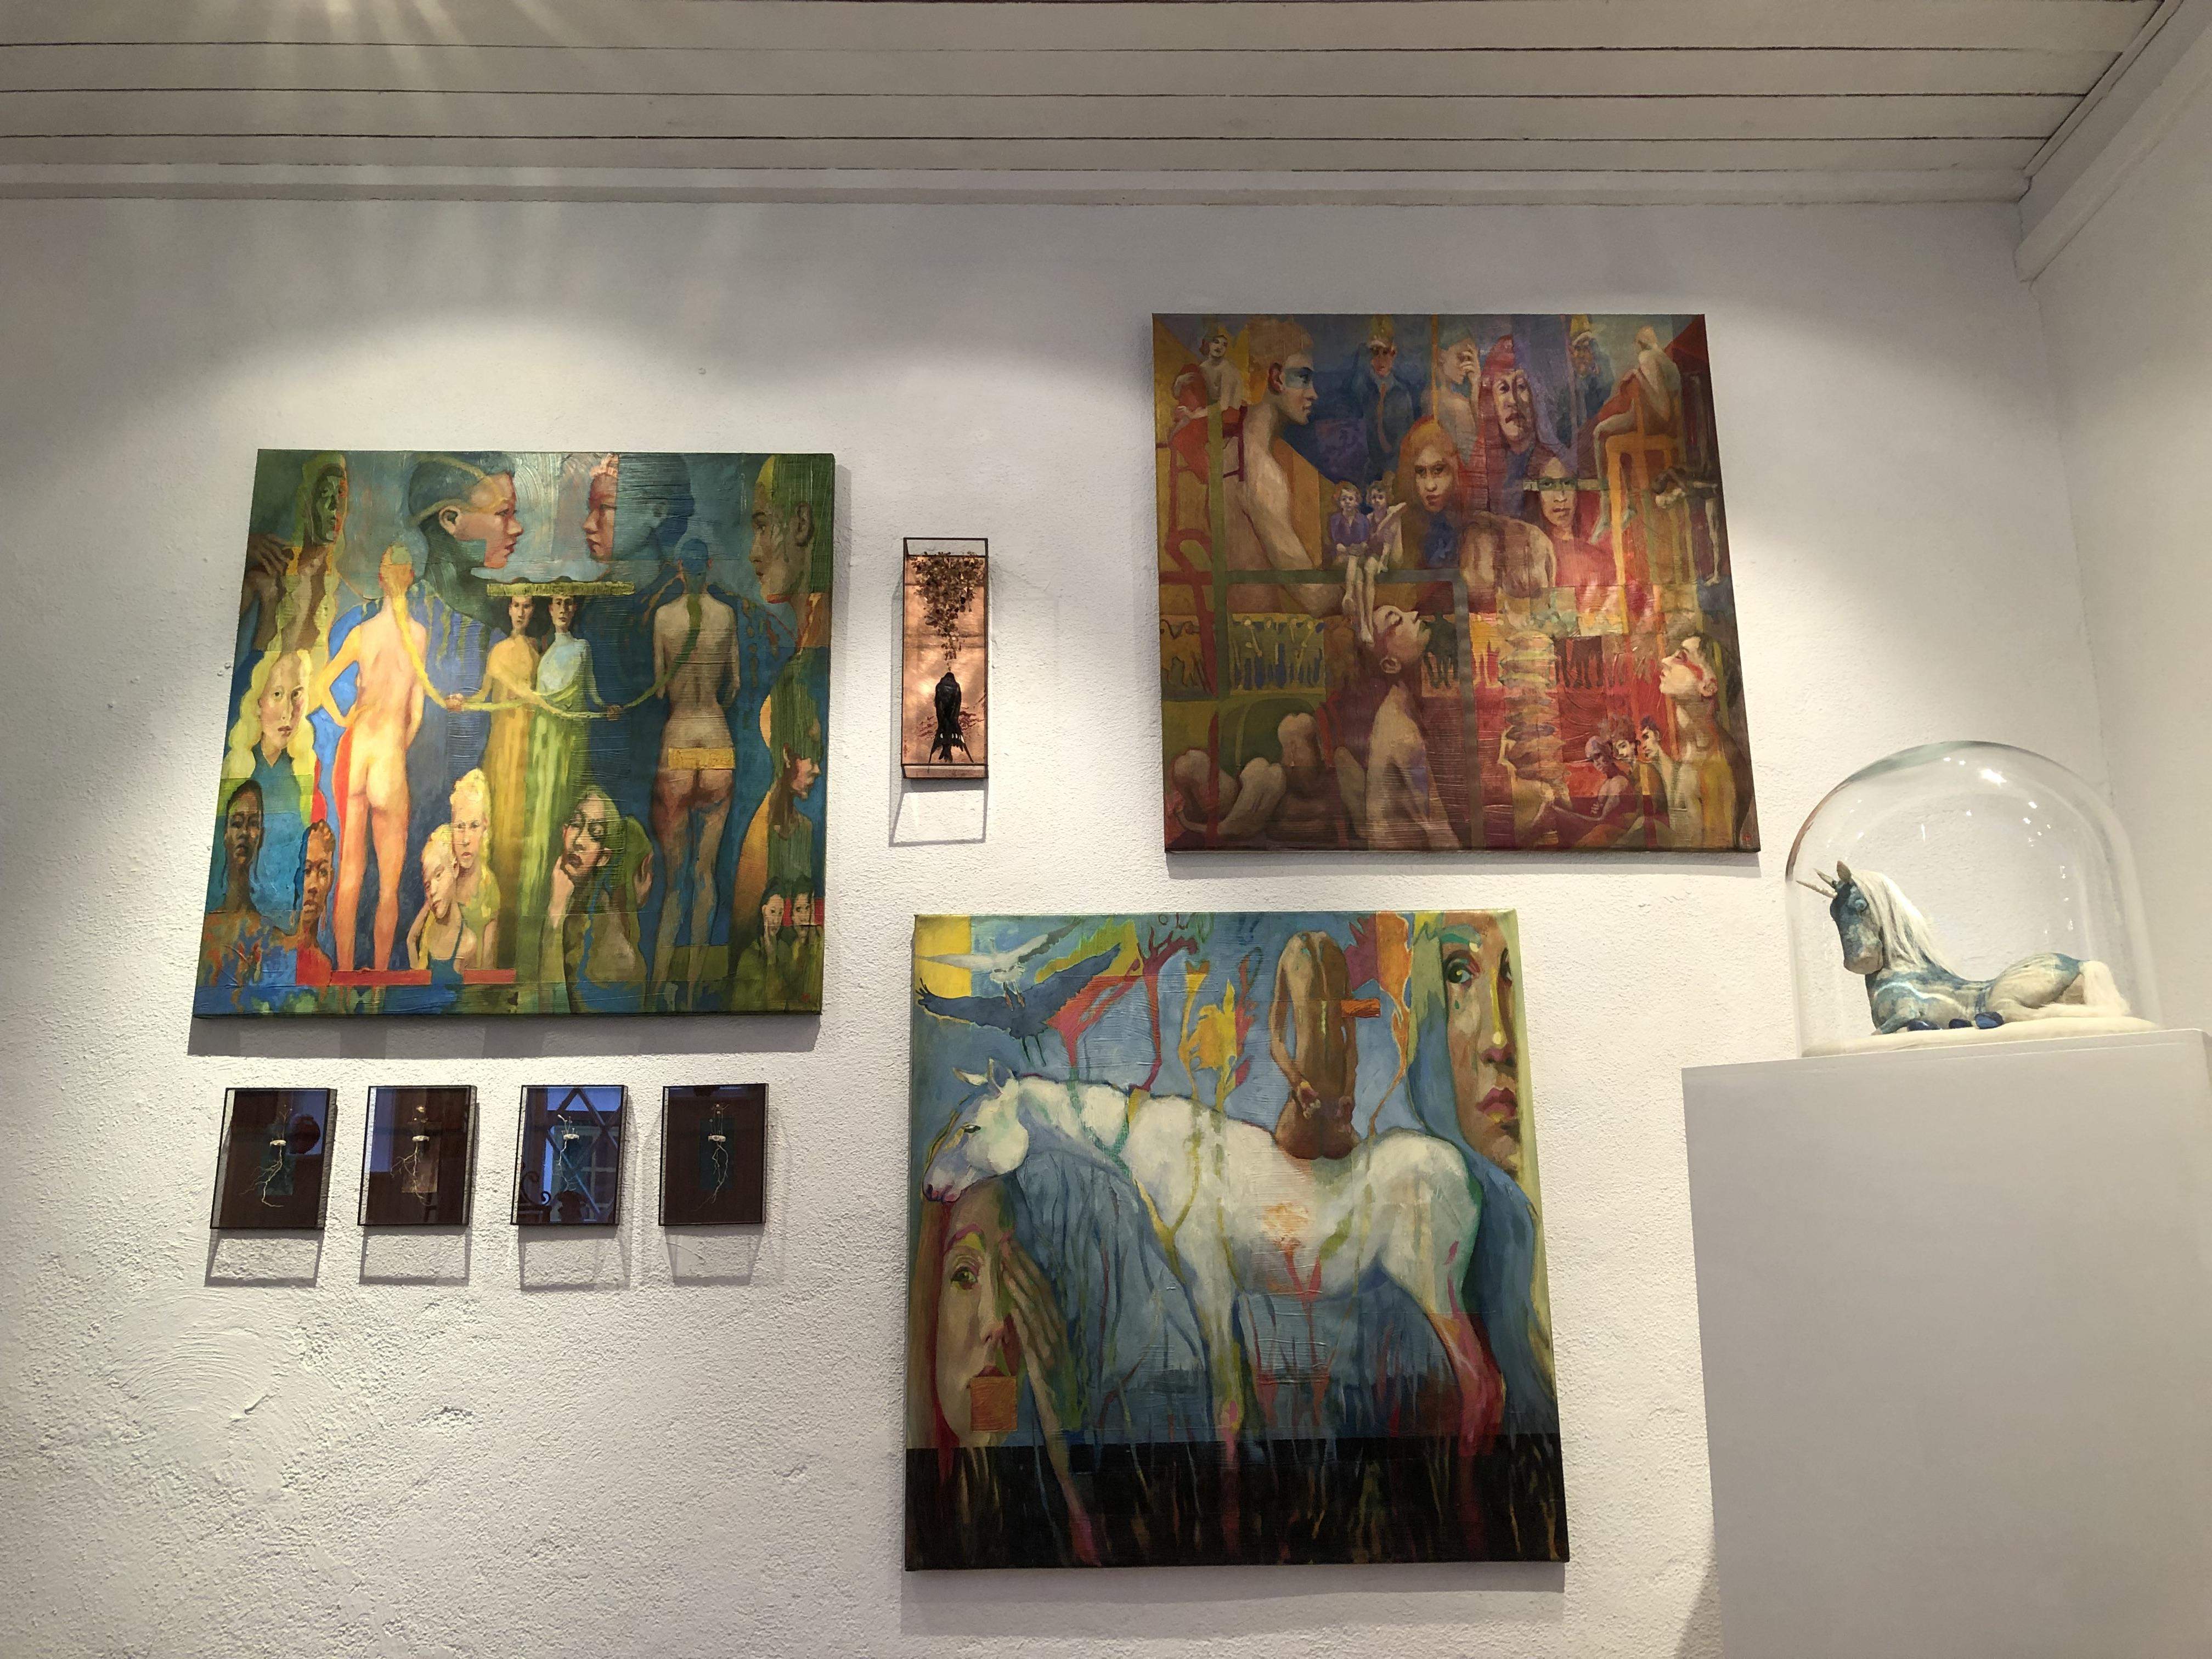 Liza's Gallery, DK, March 2023